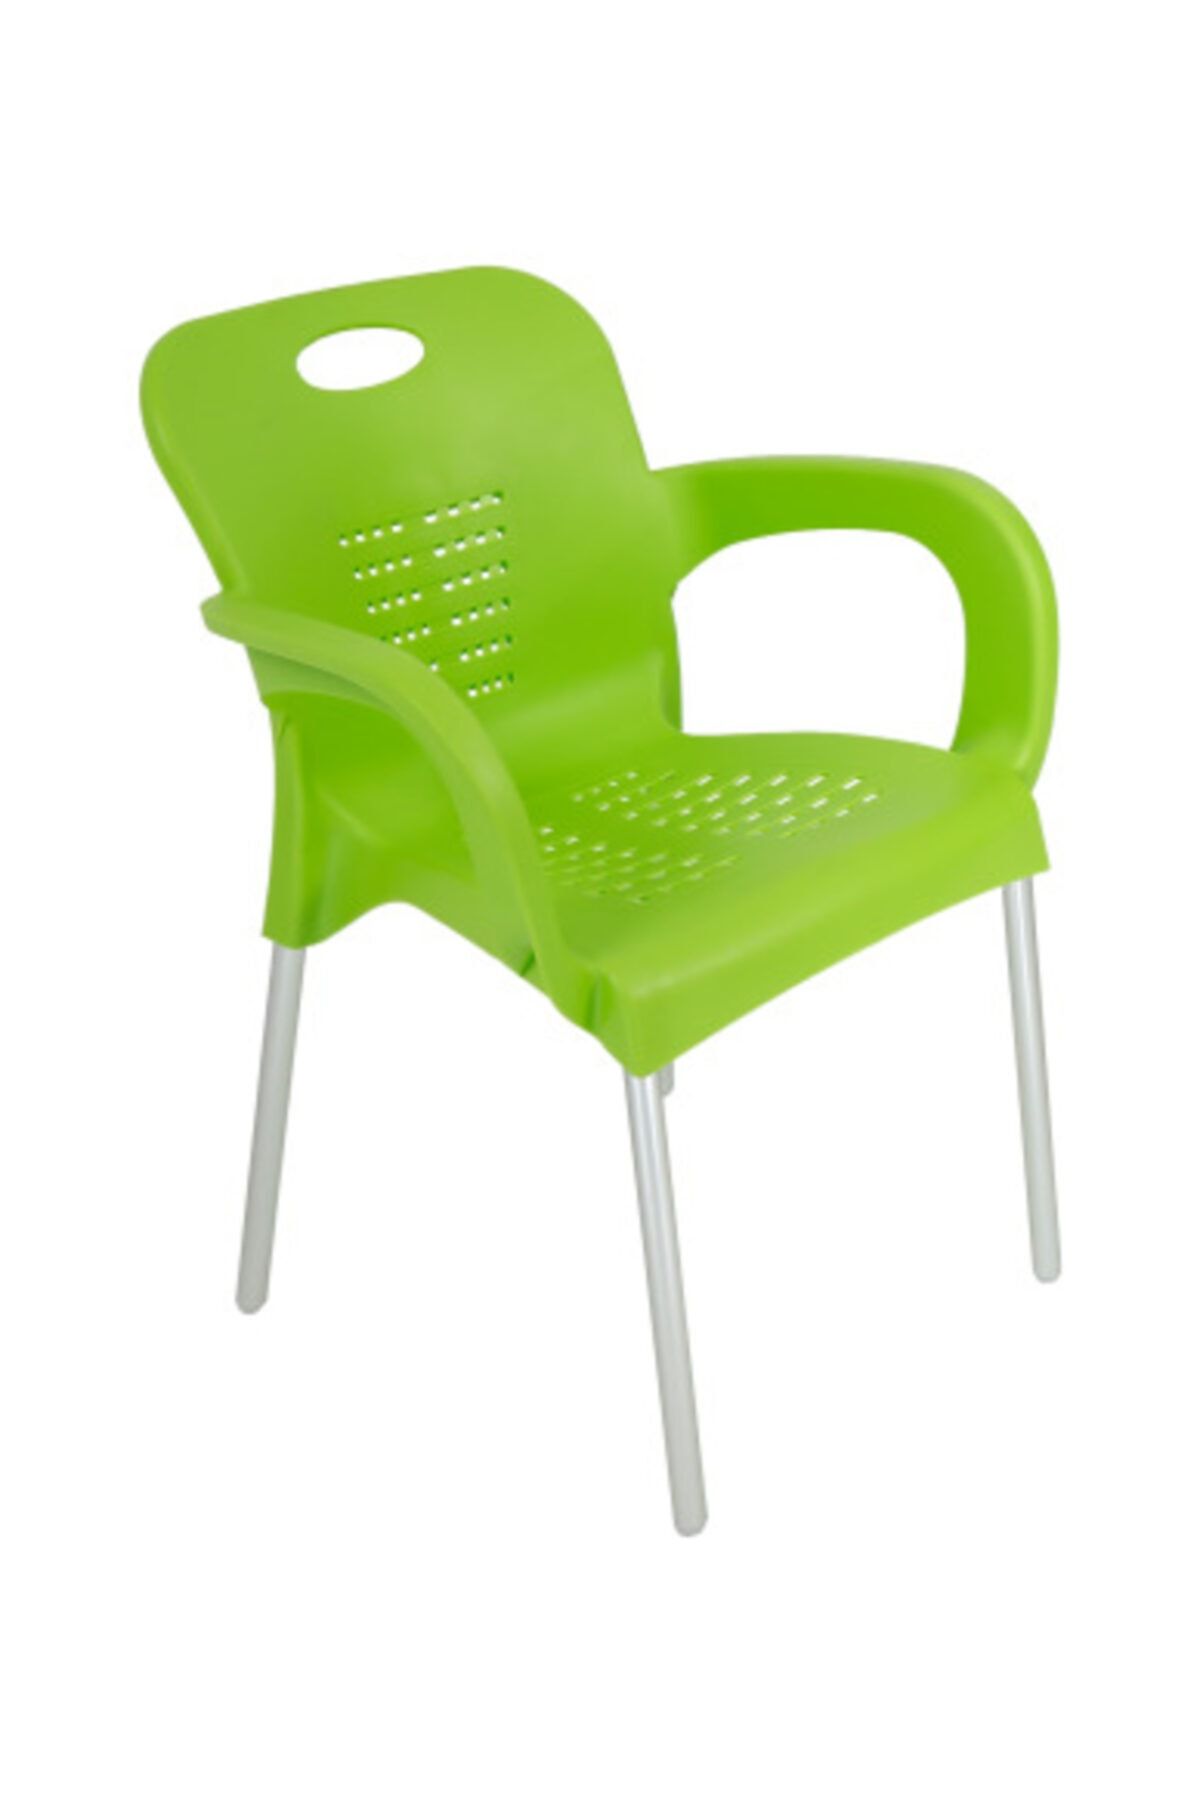 yılmaz masacılık Yeşil Nil Kollu Sandalye  8 Adet